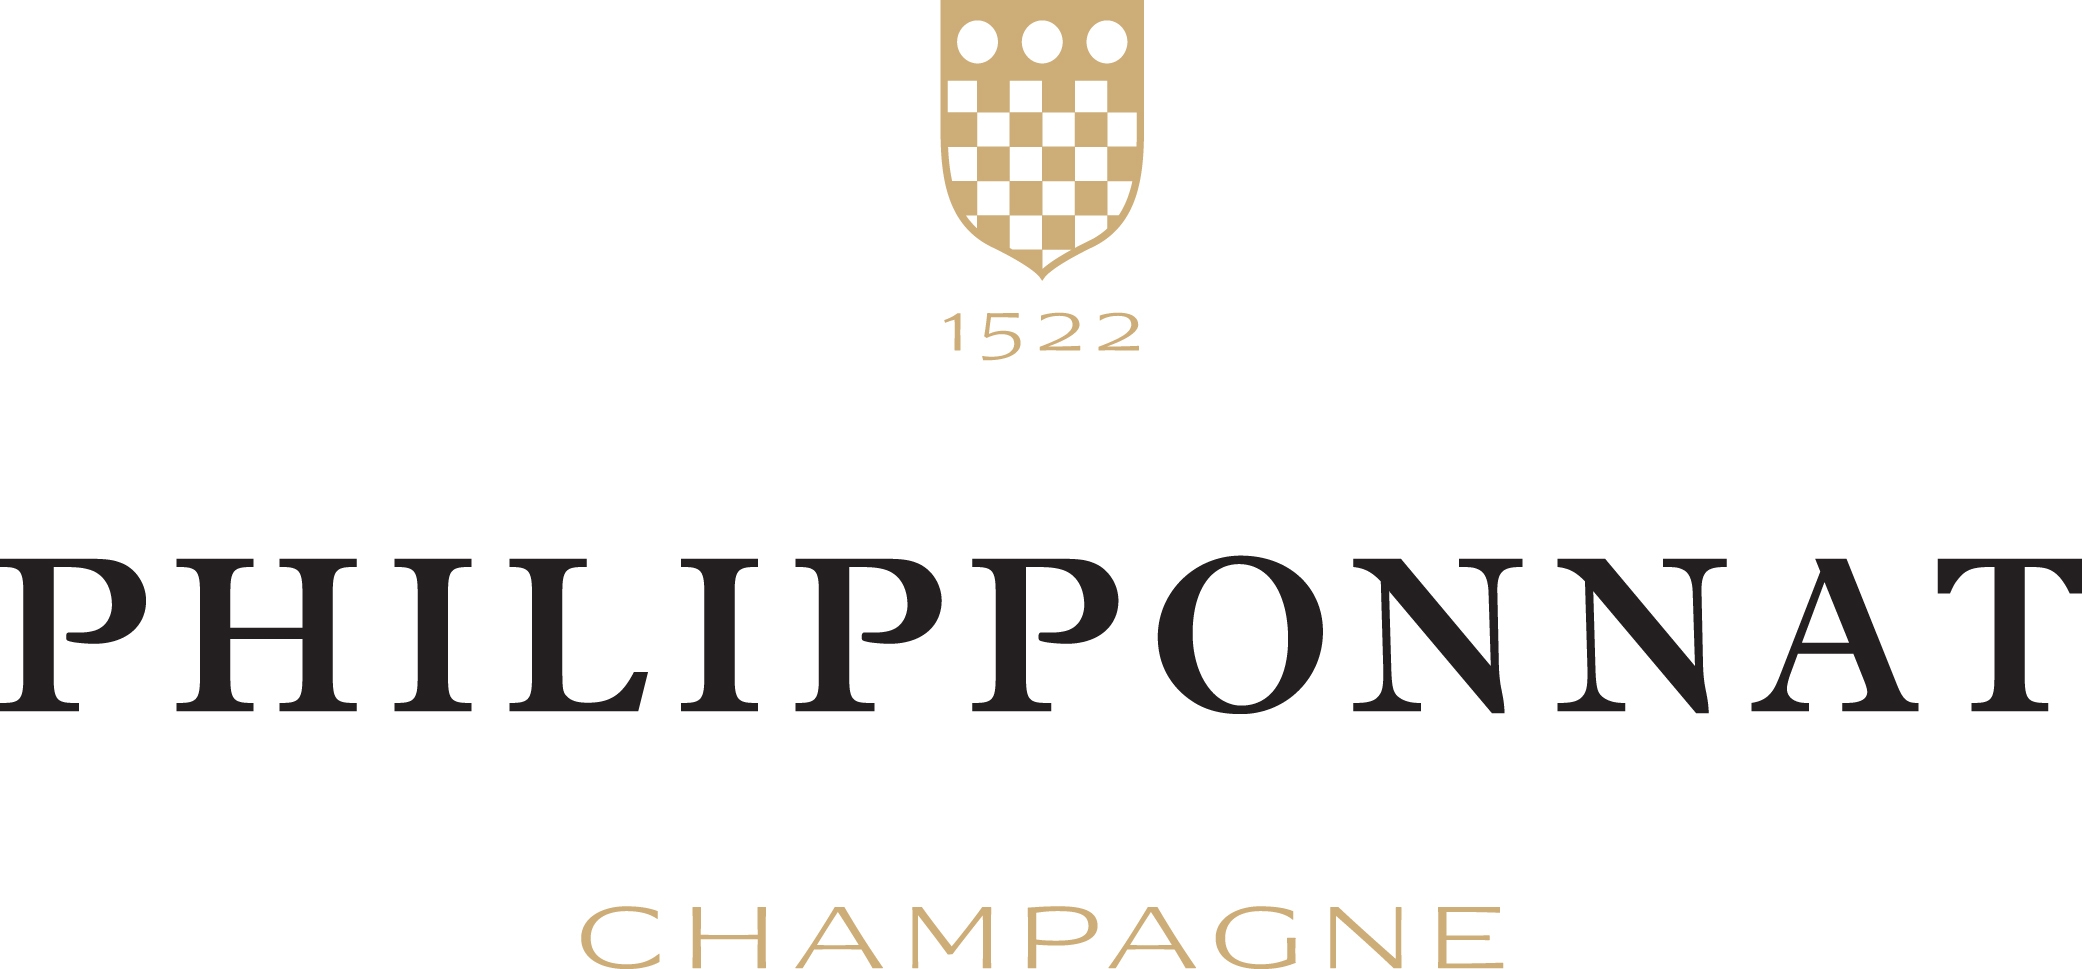 maison de Champagne philipponnat